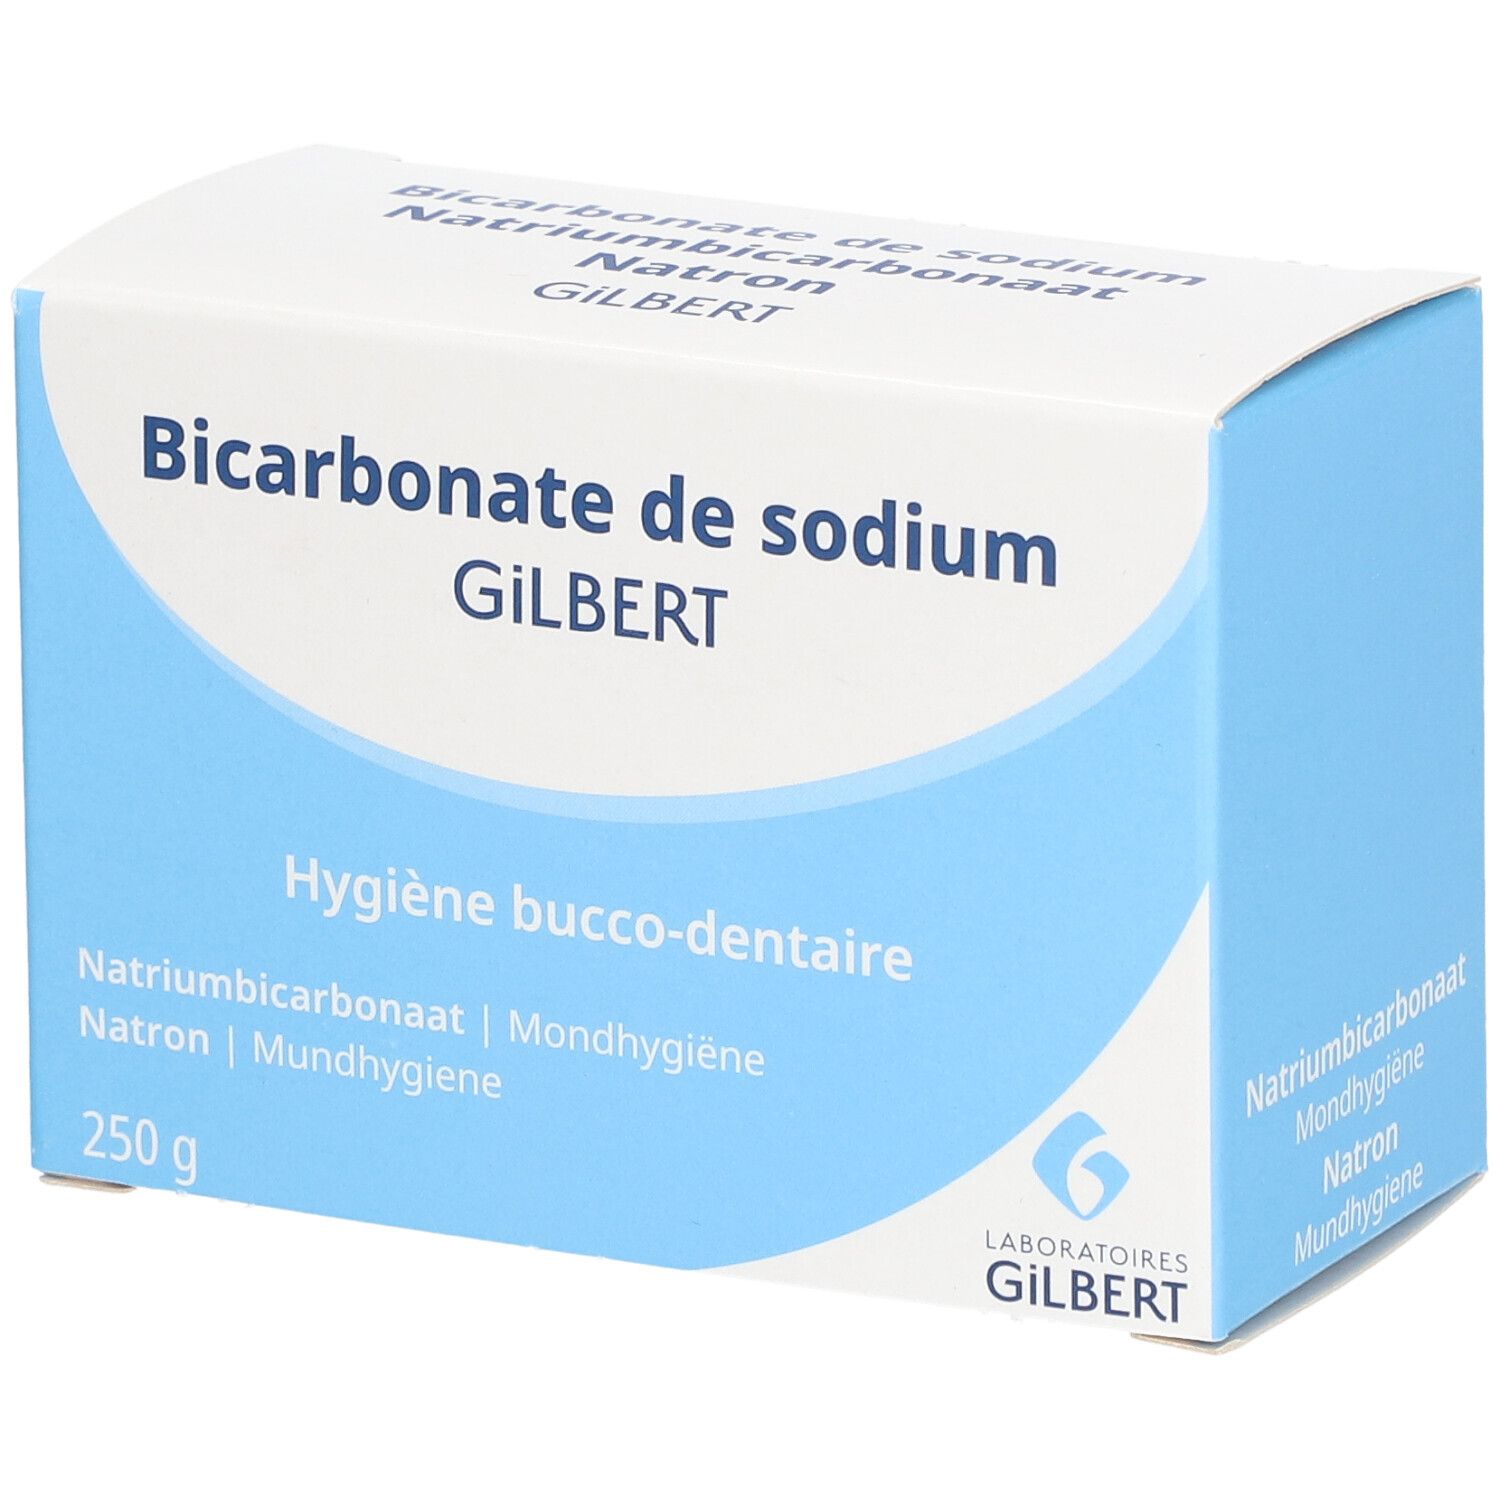 Gilbert Bicarbonate de sodium